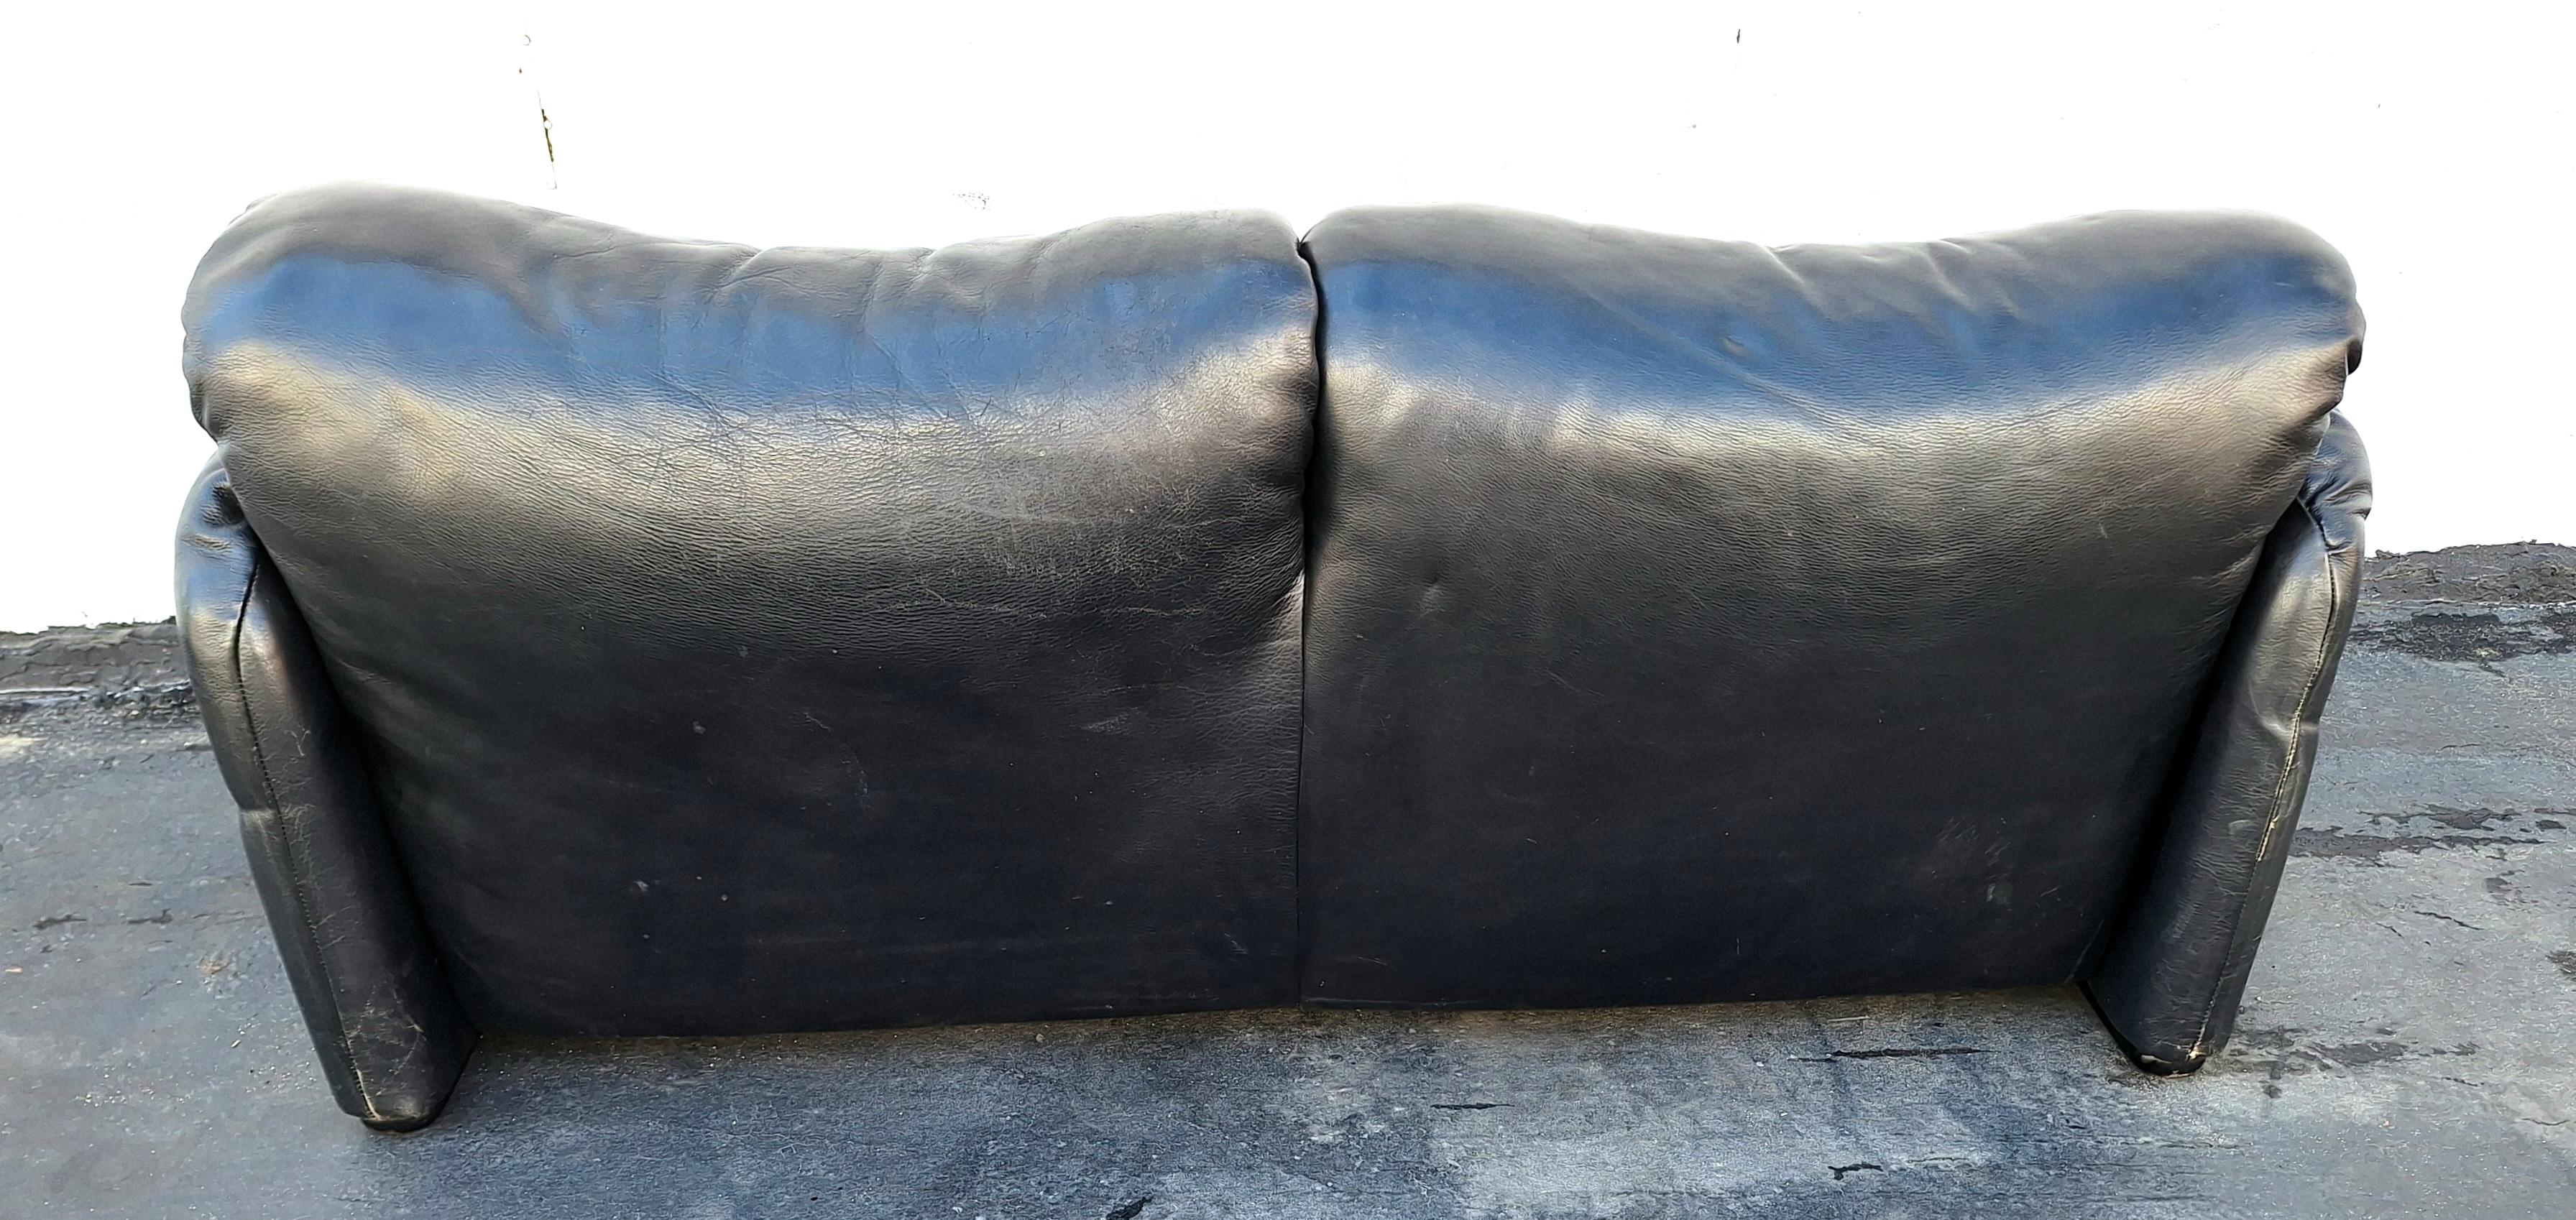 Italian Maralunga Leather Sofa - Settee by Vico Magisretti for Casina  For Sale